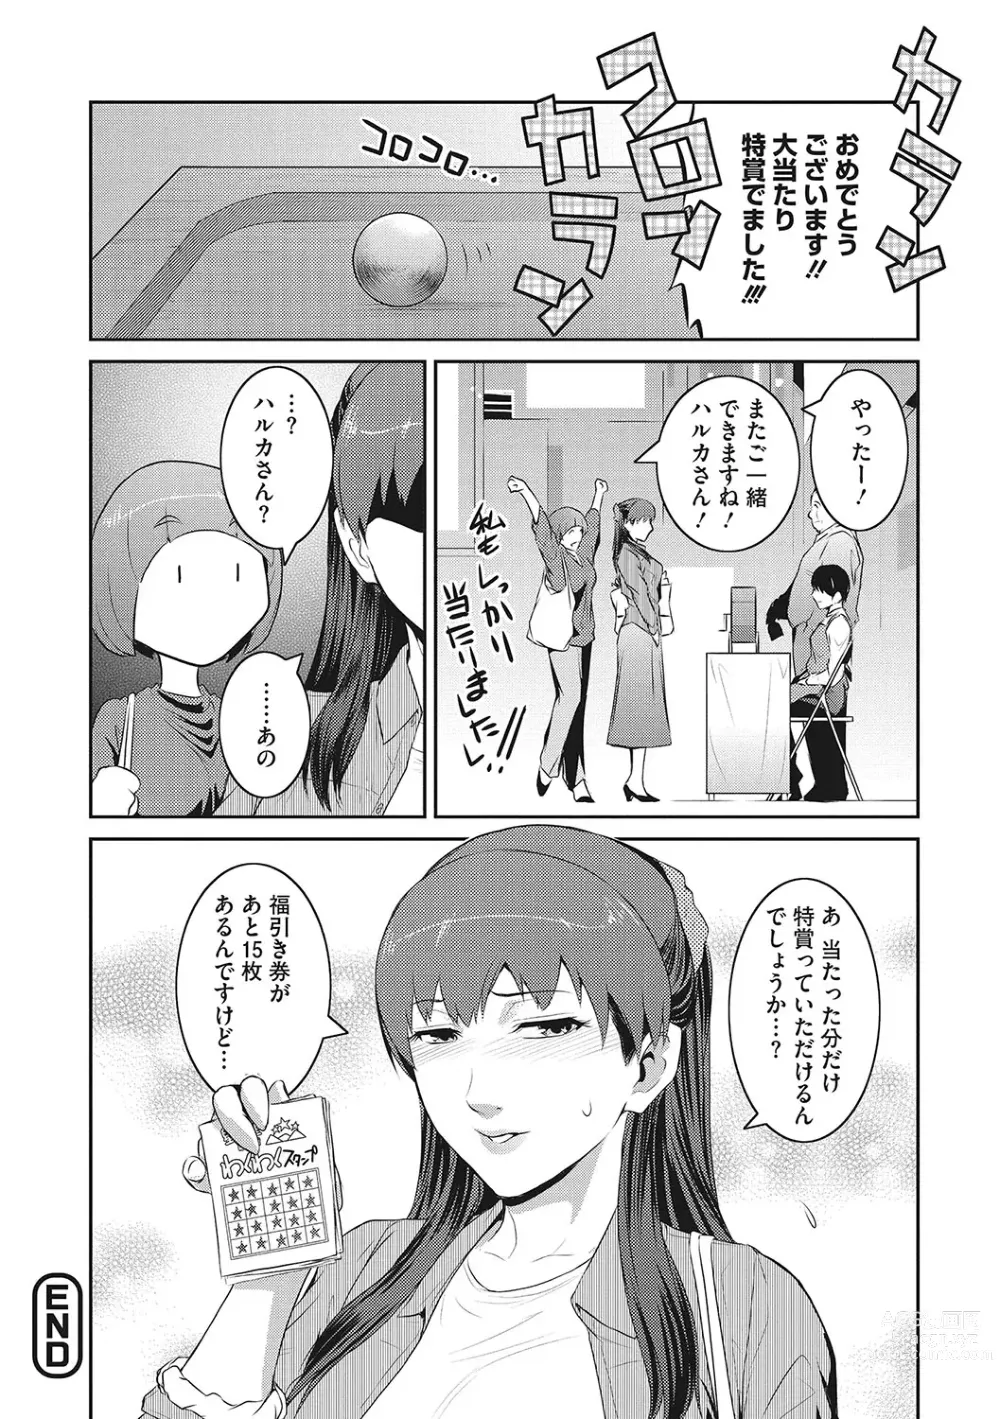 Page 195 of manga Genwaku